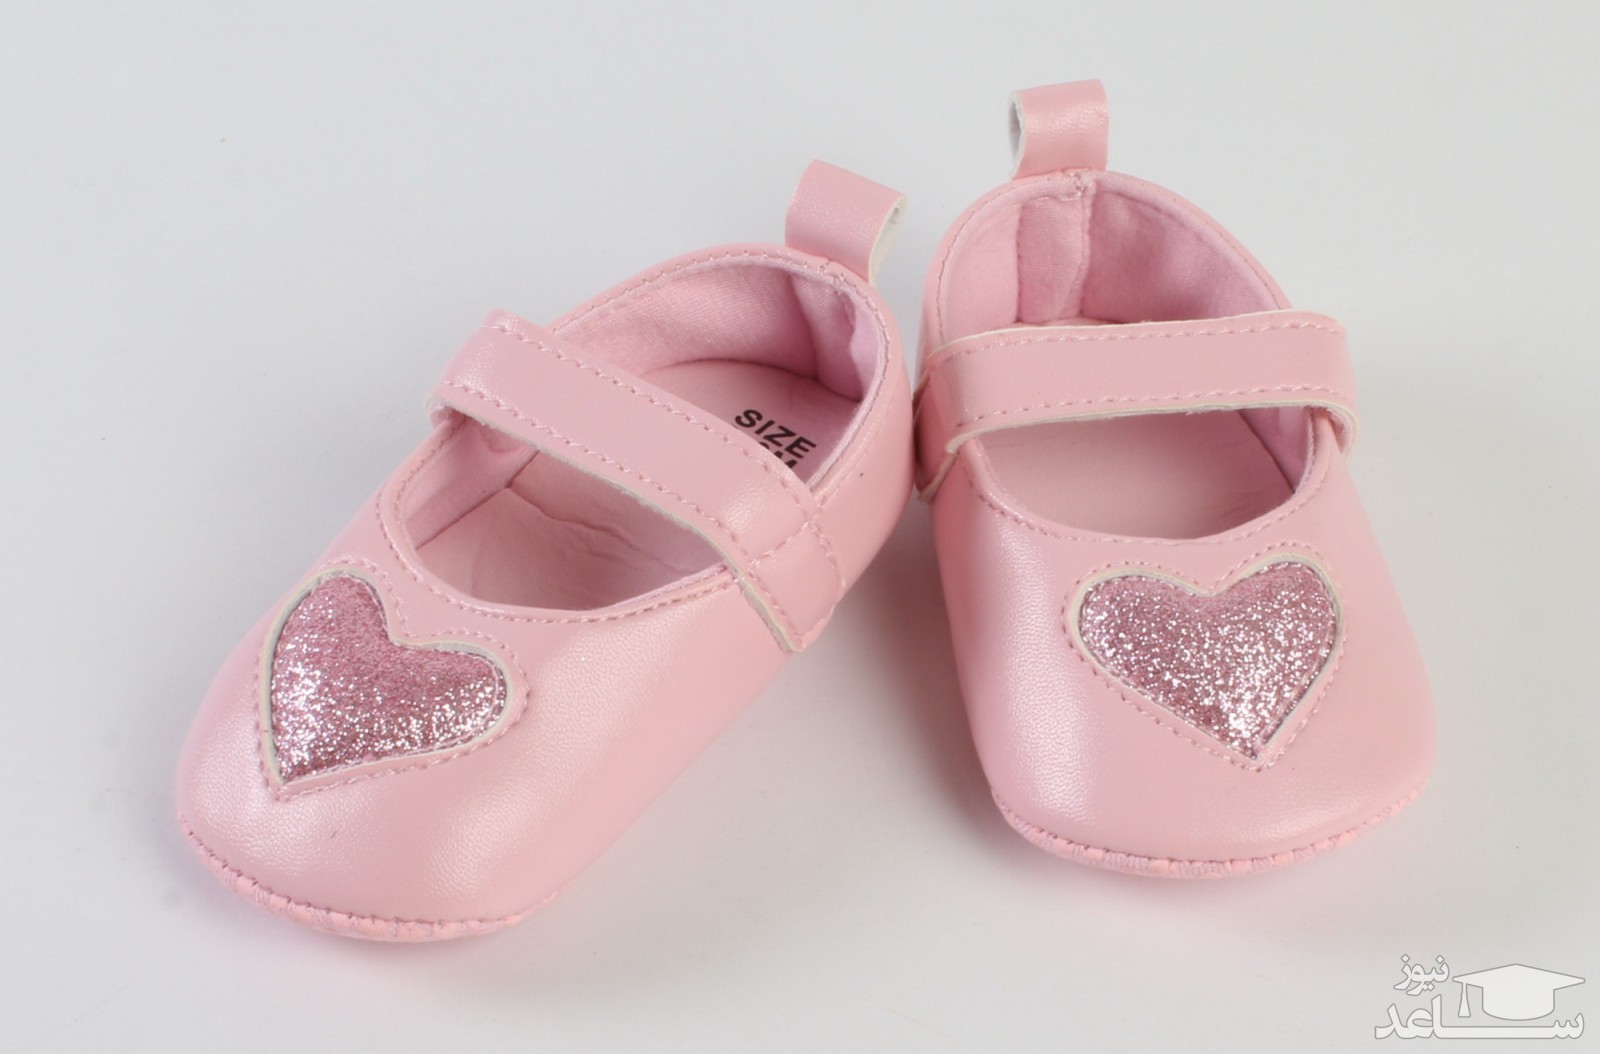 خرید کفش سالم برای کودک با رعایت چند نکته